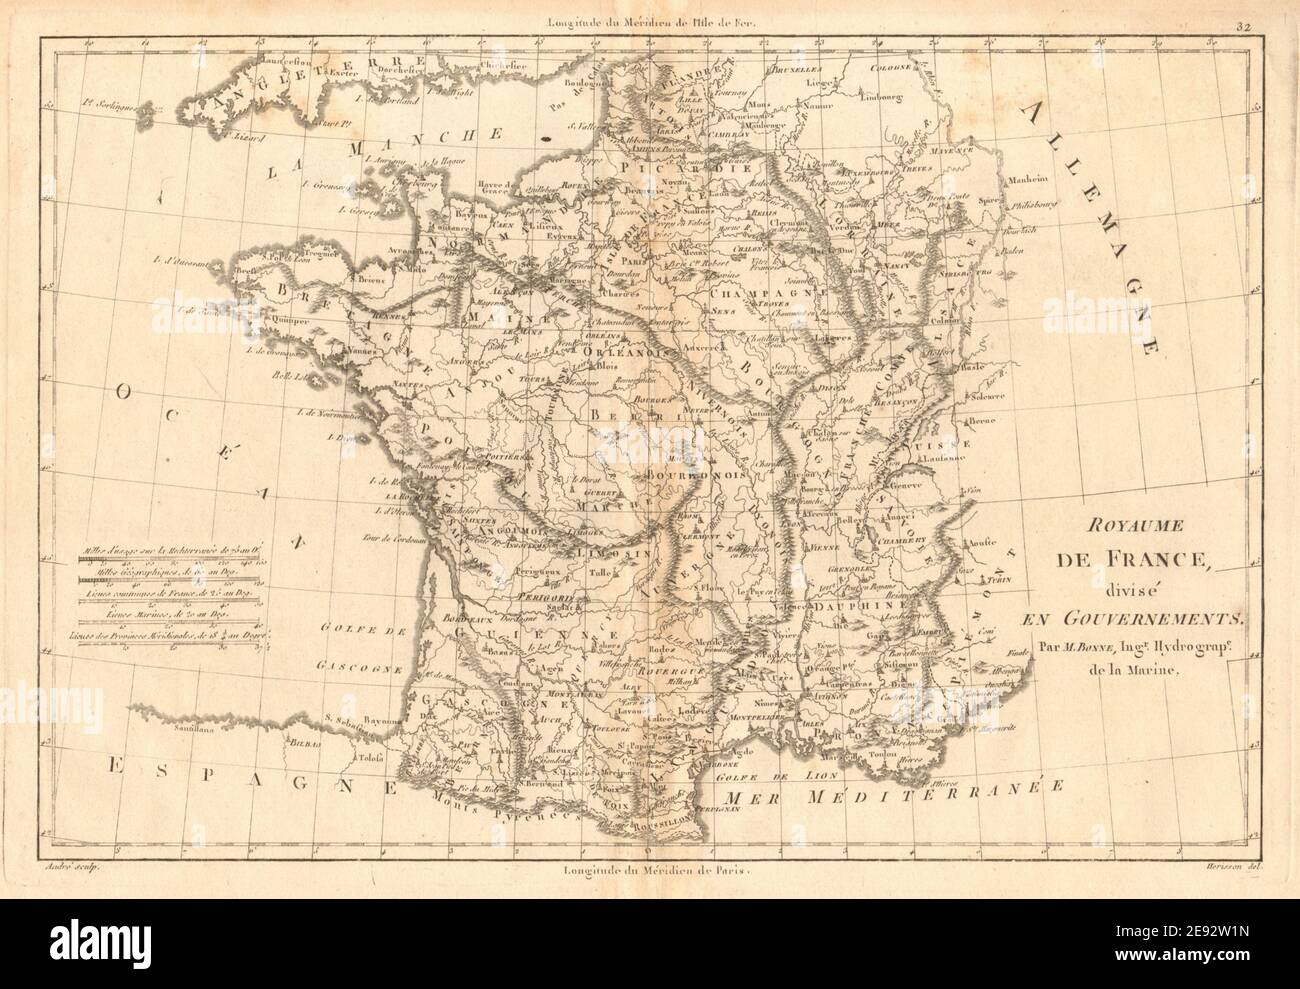 Royaume de France, divisé en Gouvernements. Province. BONNE 1787 vecchia mappa Foto Stock